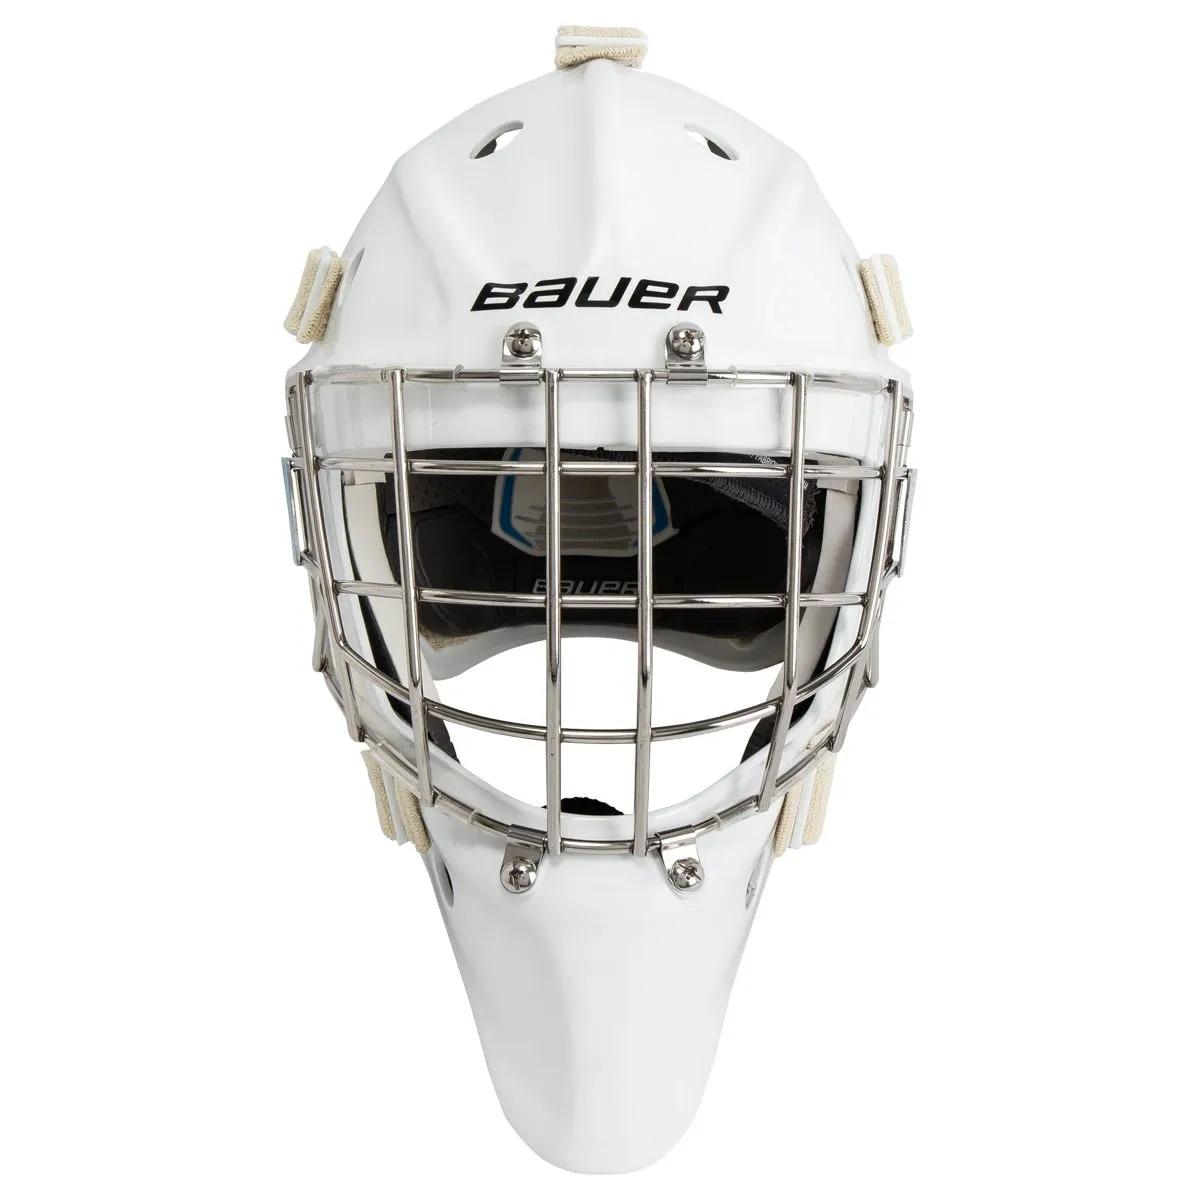 Bauer 950 Sr. Certified Goalie Maskproduct zoom image #3